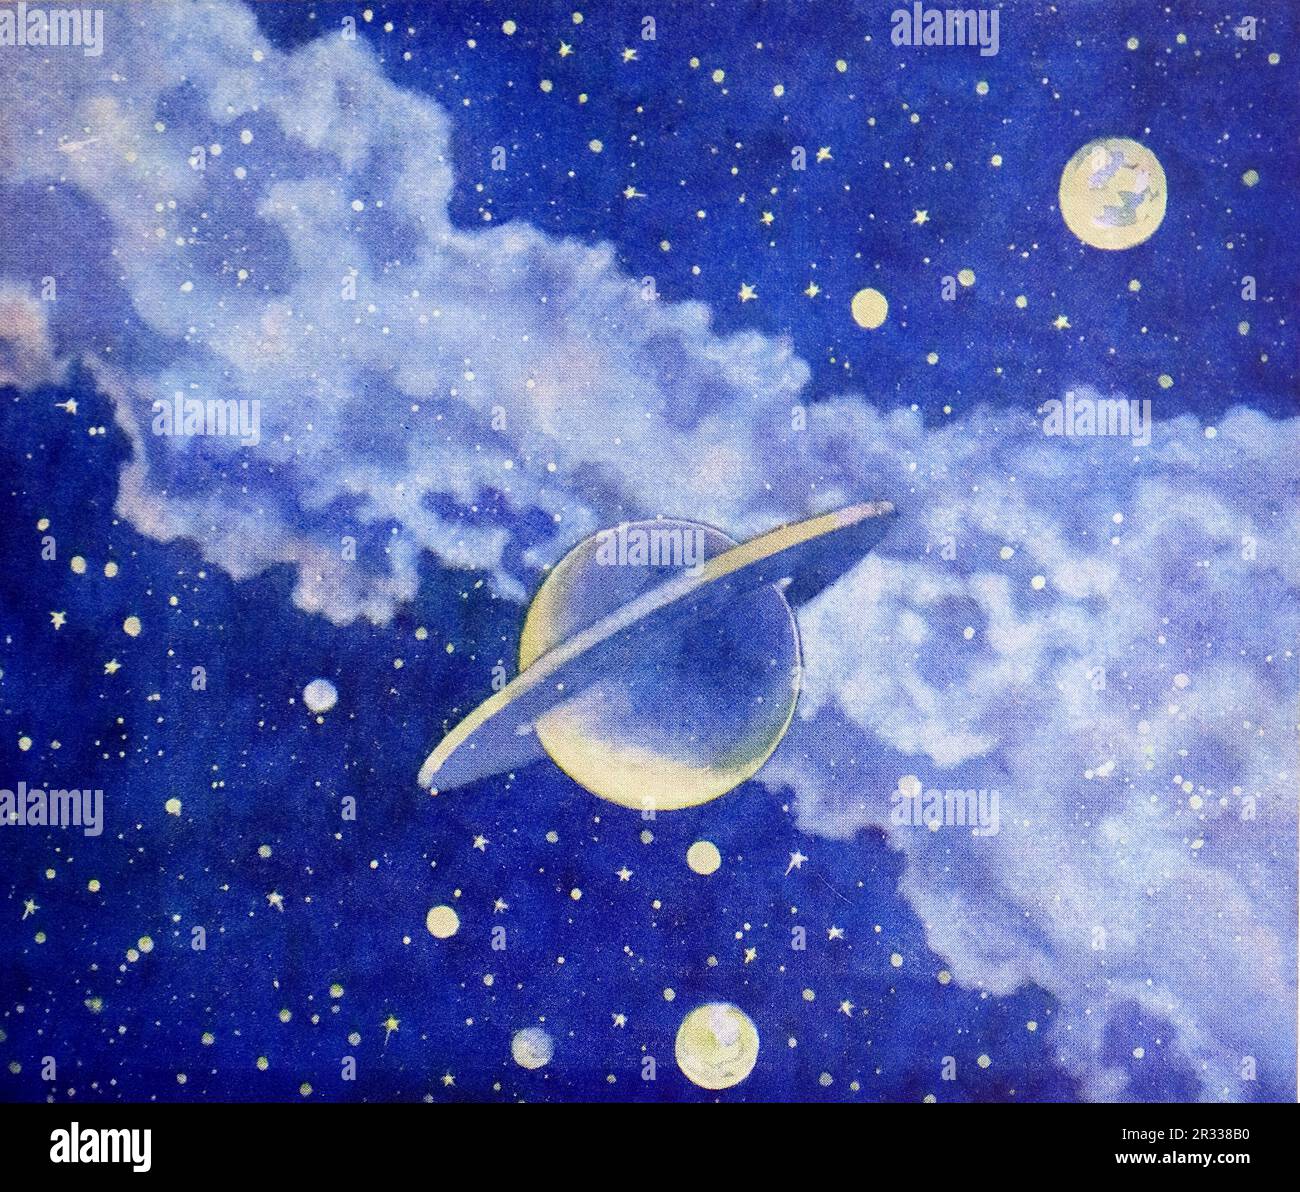 Von Rene Bull Farbe: Der umringte Planet, Saturn, mit einem anderen Planeten, möglicherweise Erde, im Hintergrund. Vom Rubaiyat von Omar Khayyam. Stockfoto